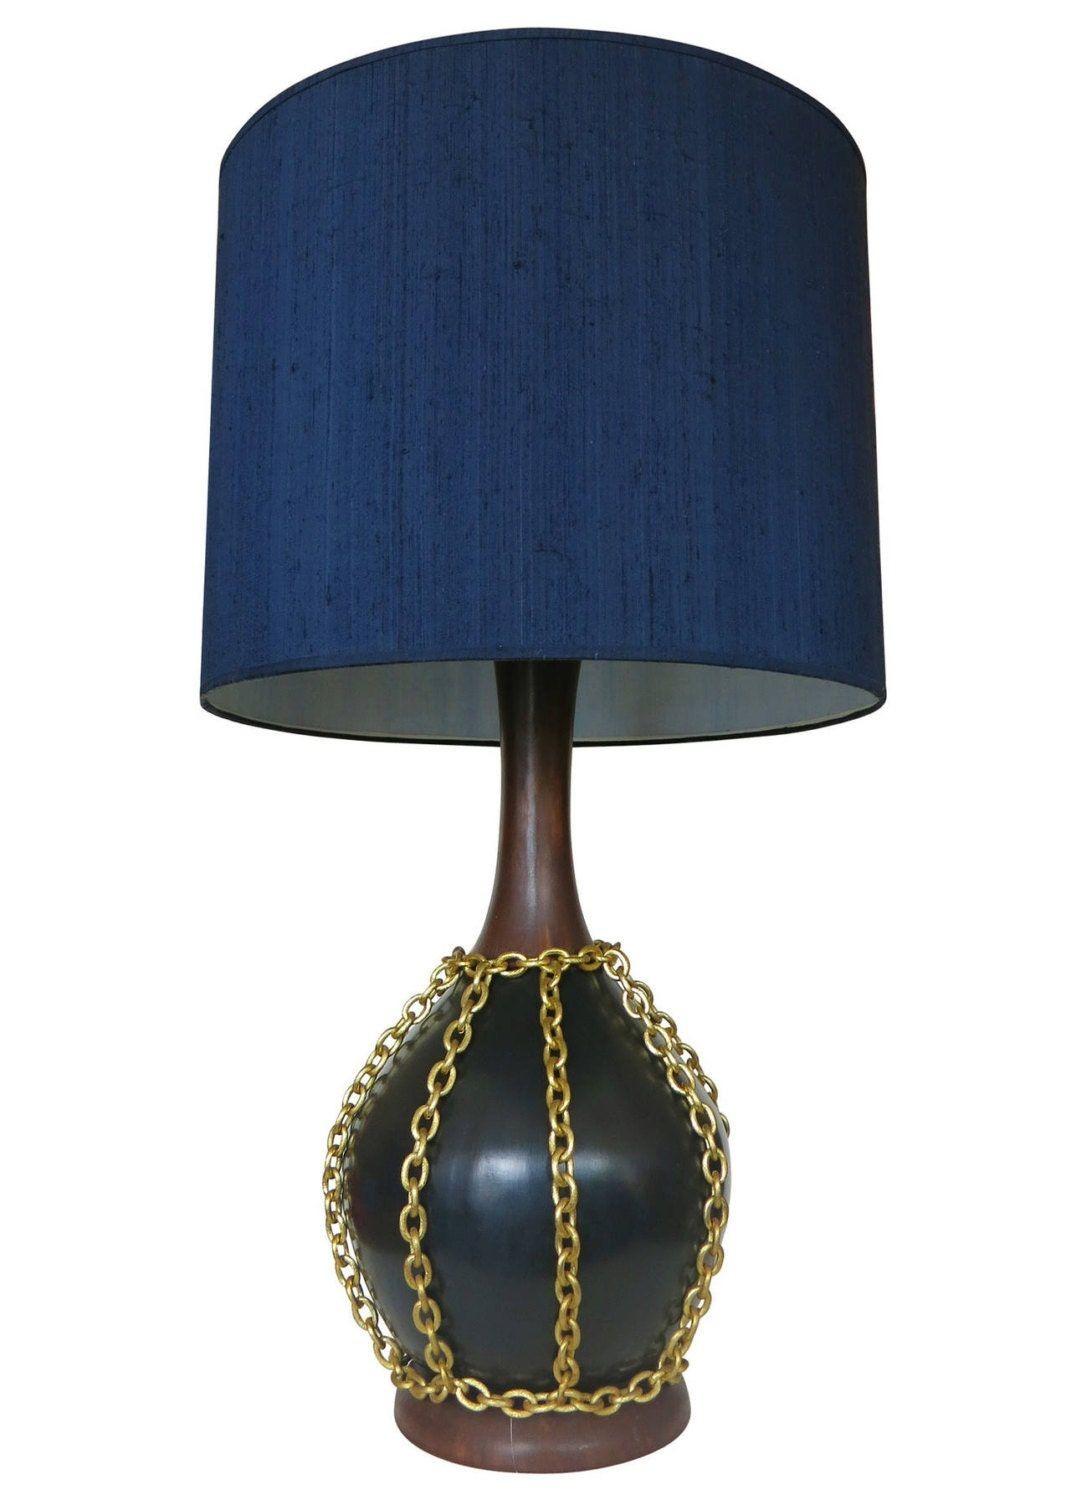 Realizzata intorno al 1960, questa grande coppia di lampade in ceramica presenta una finitura nera e a venature di legno con un'esclusiva catena decorativa in metallo dorato che pende al centro di ciascun corpo della lampada. Insieme alla lampada